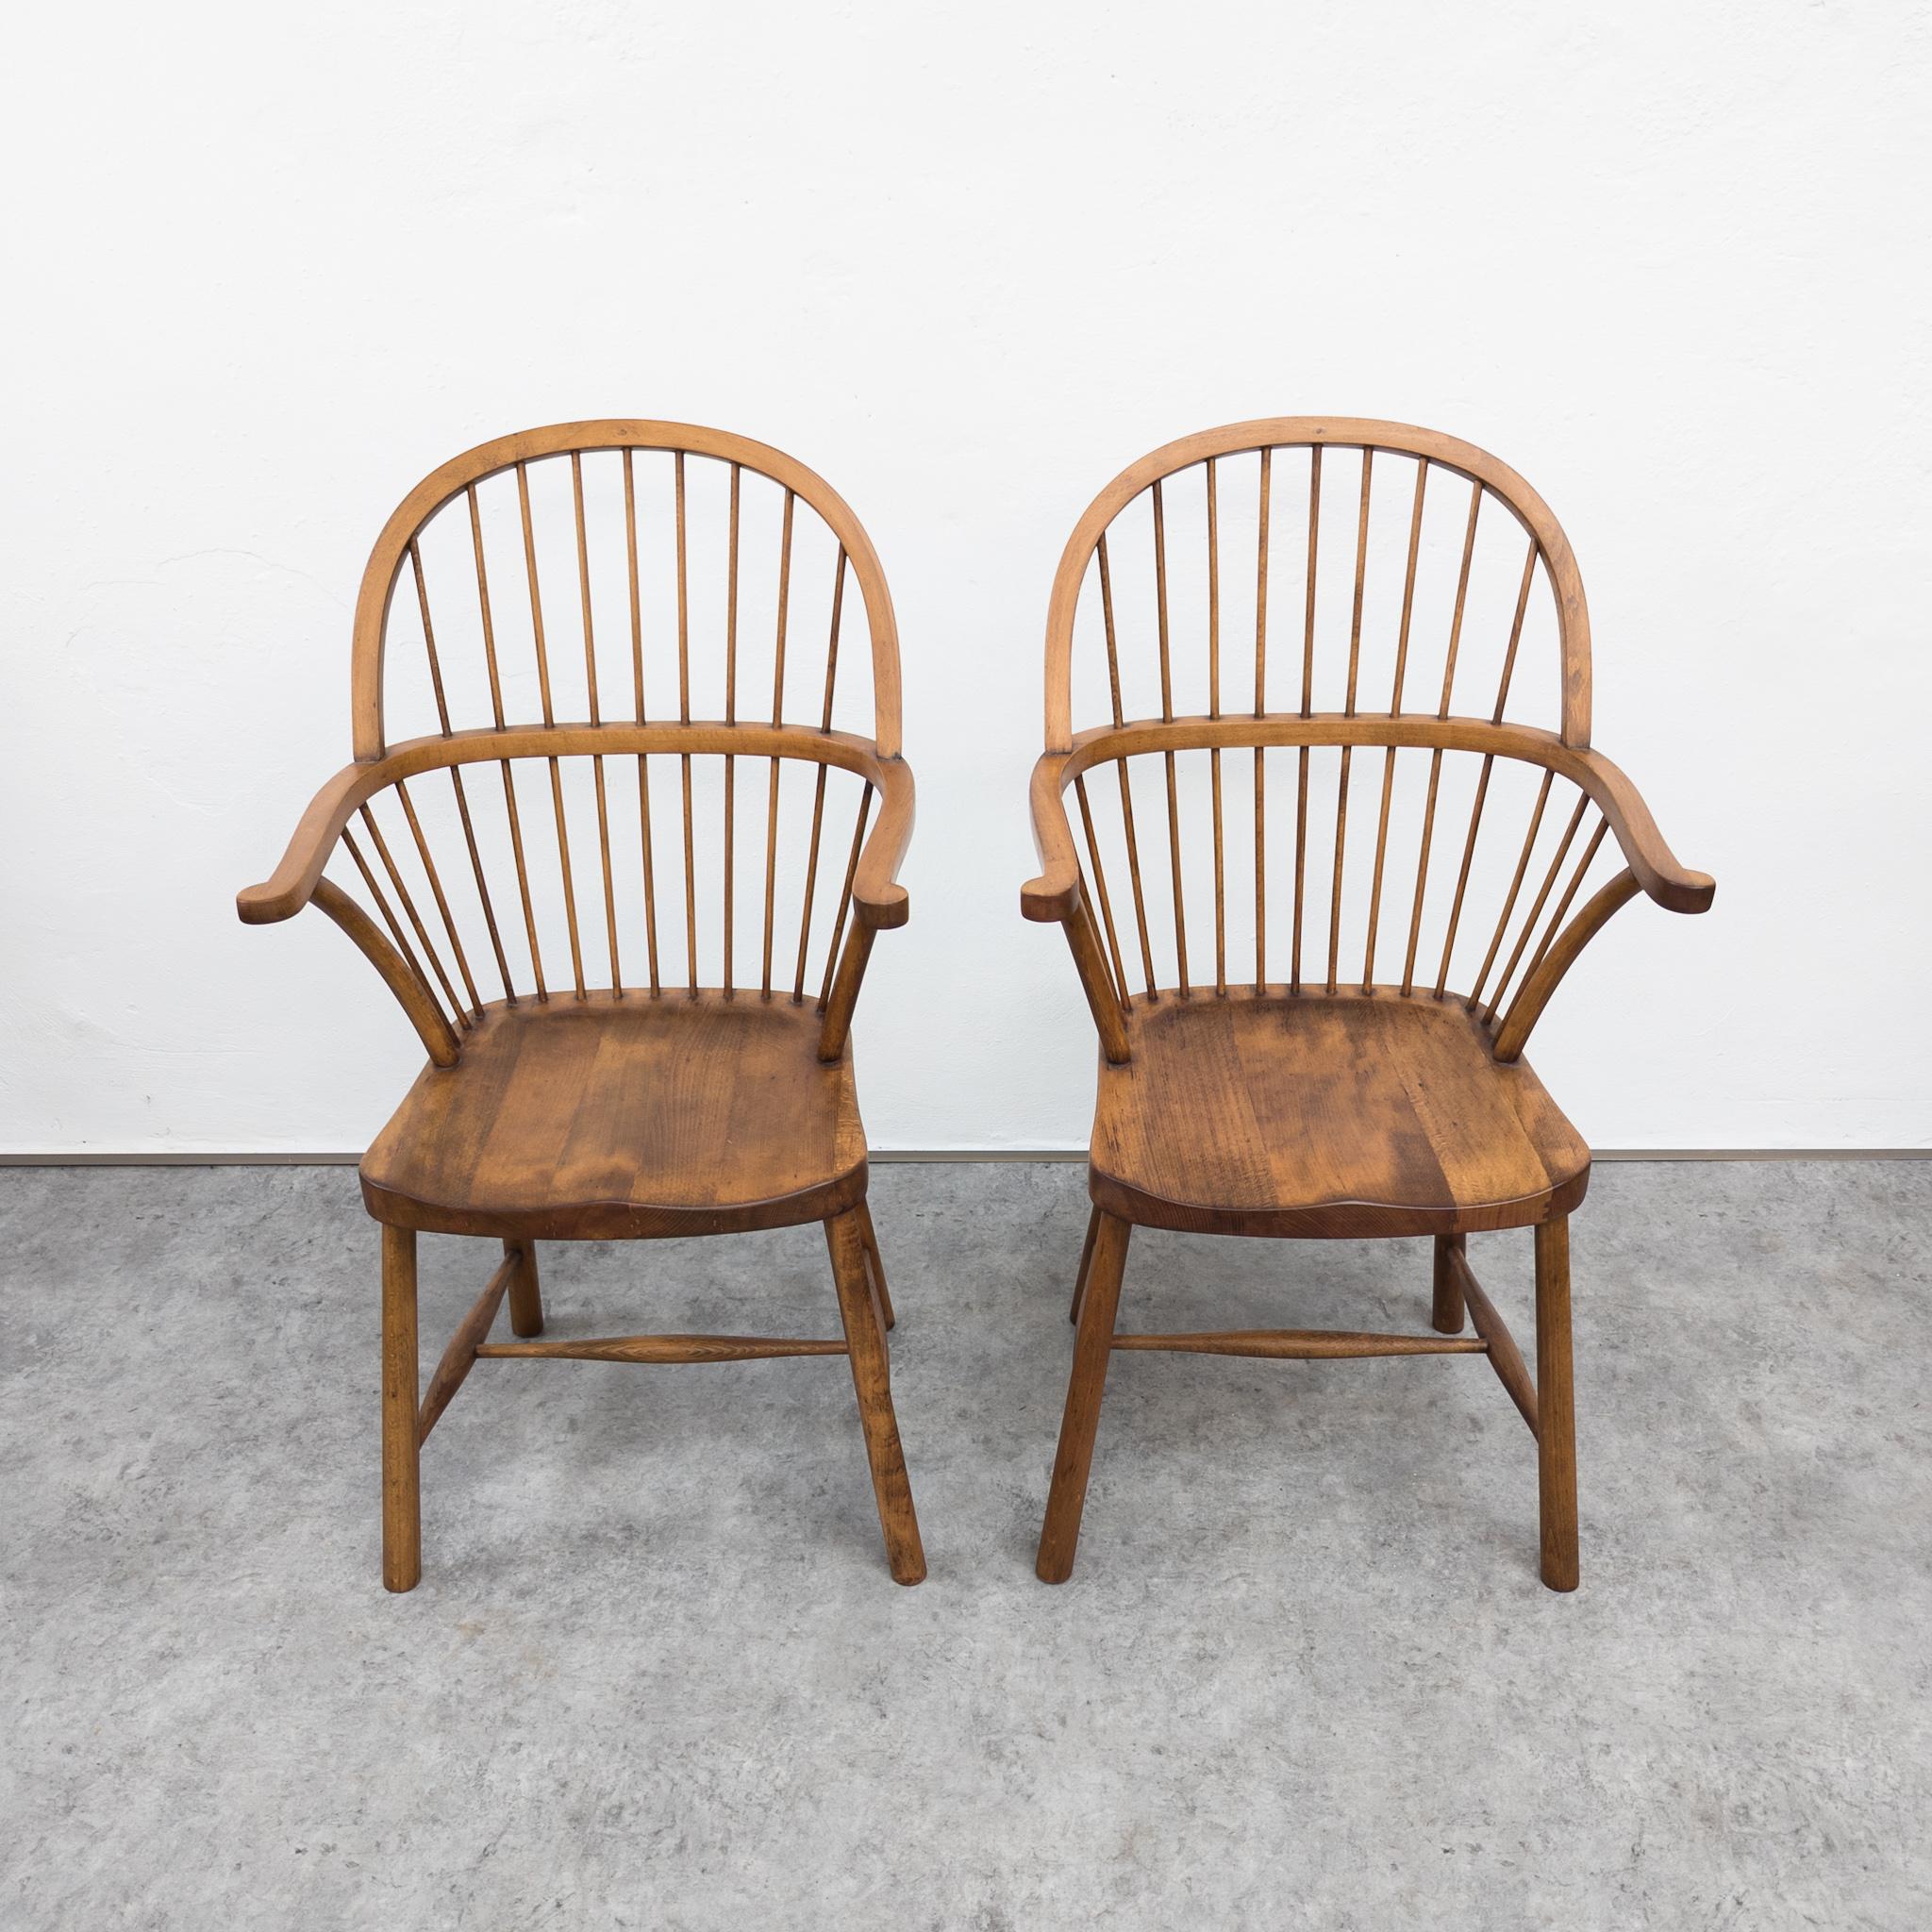 Rarissimes chaises de style Windsor en hêtre de Loos Adolf (1870-1933), fabriquées par Gebrüder Thonet. Estampillé de la marque de l'entreprise. La paternité est attribuée à A. Egli en 1903 (chaises utilisées par exemple à l'intérieur de son propre